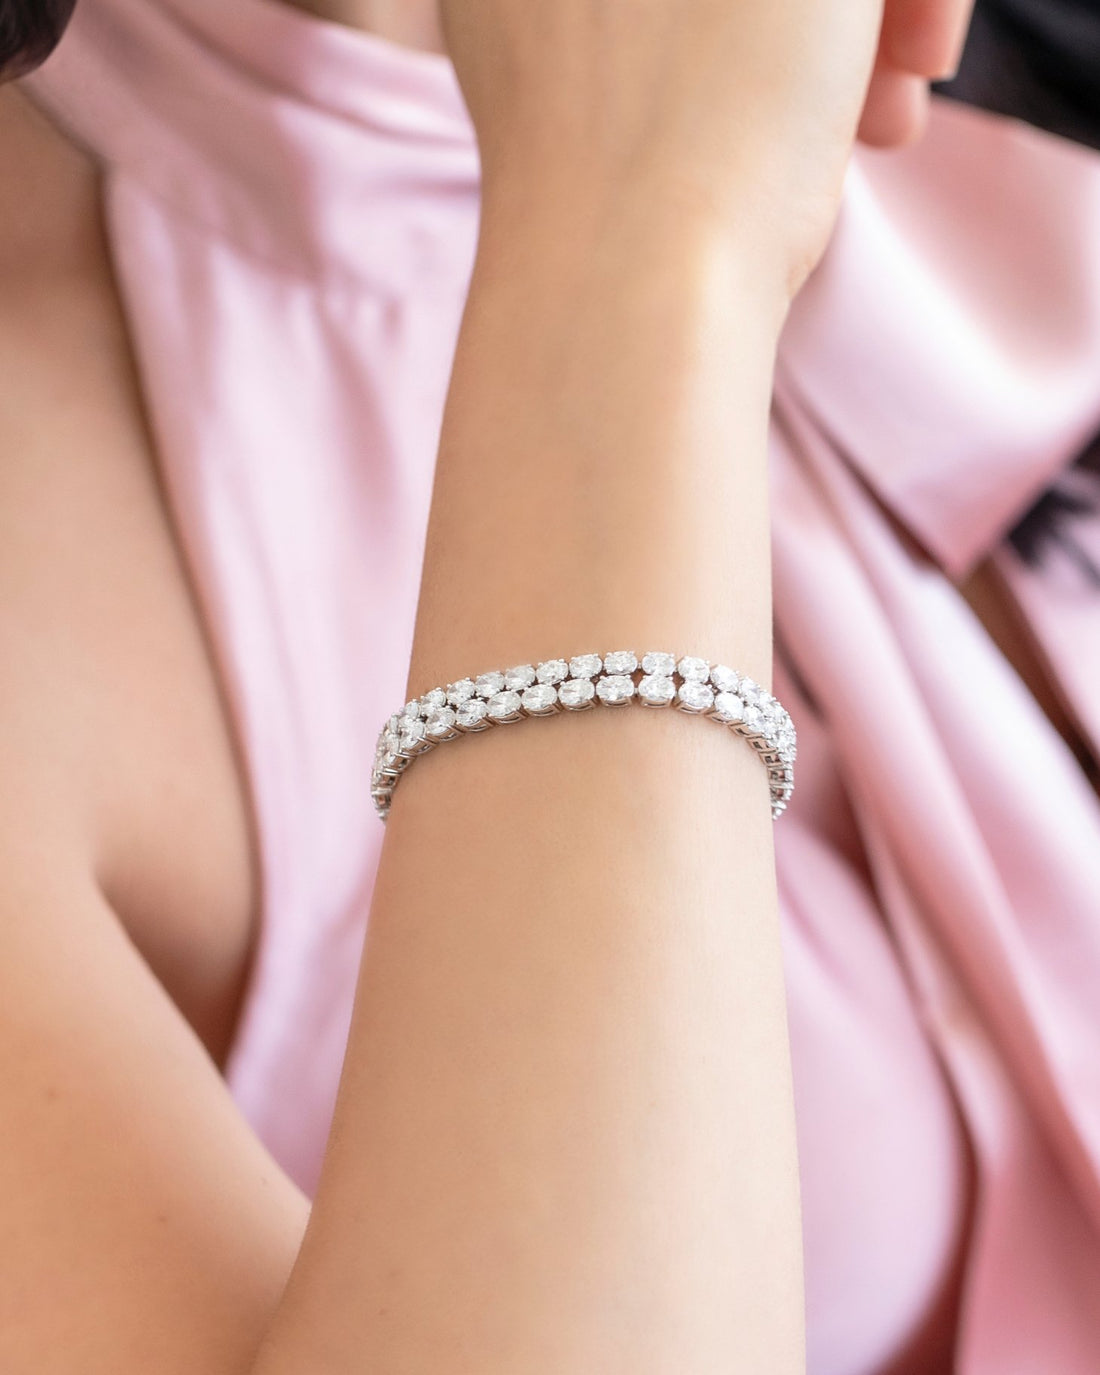 How to make an easy but elegant pearl bracelet - Beginner level